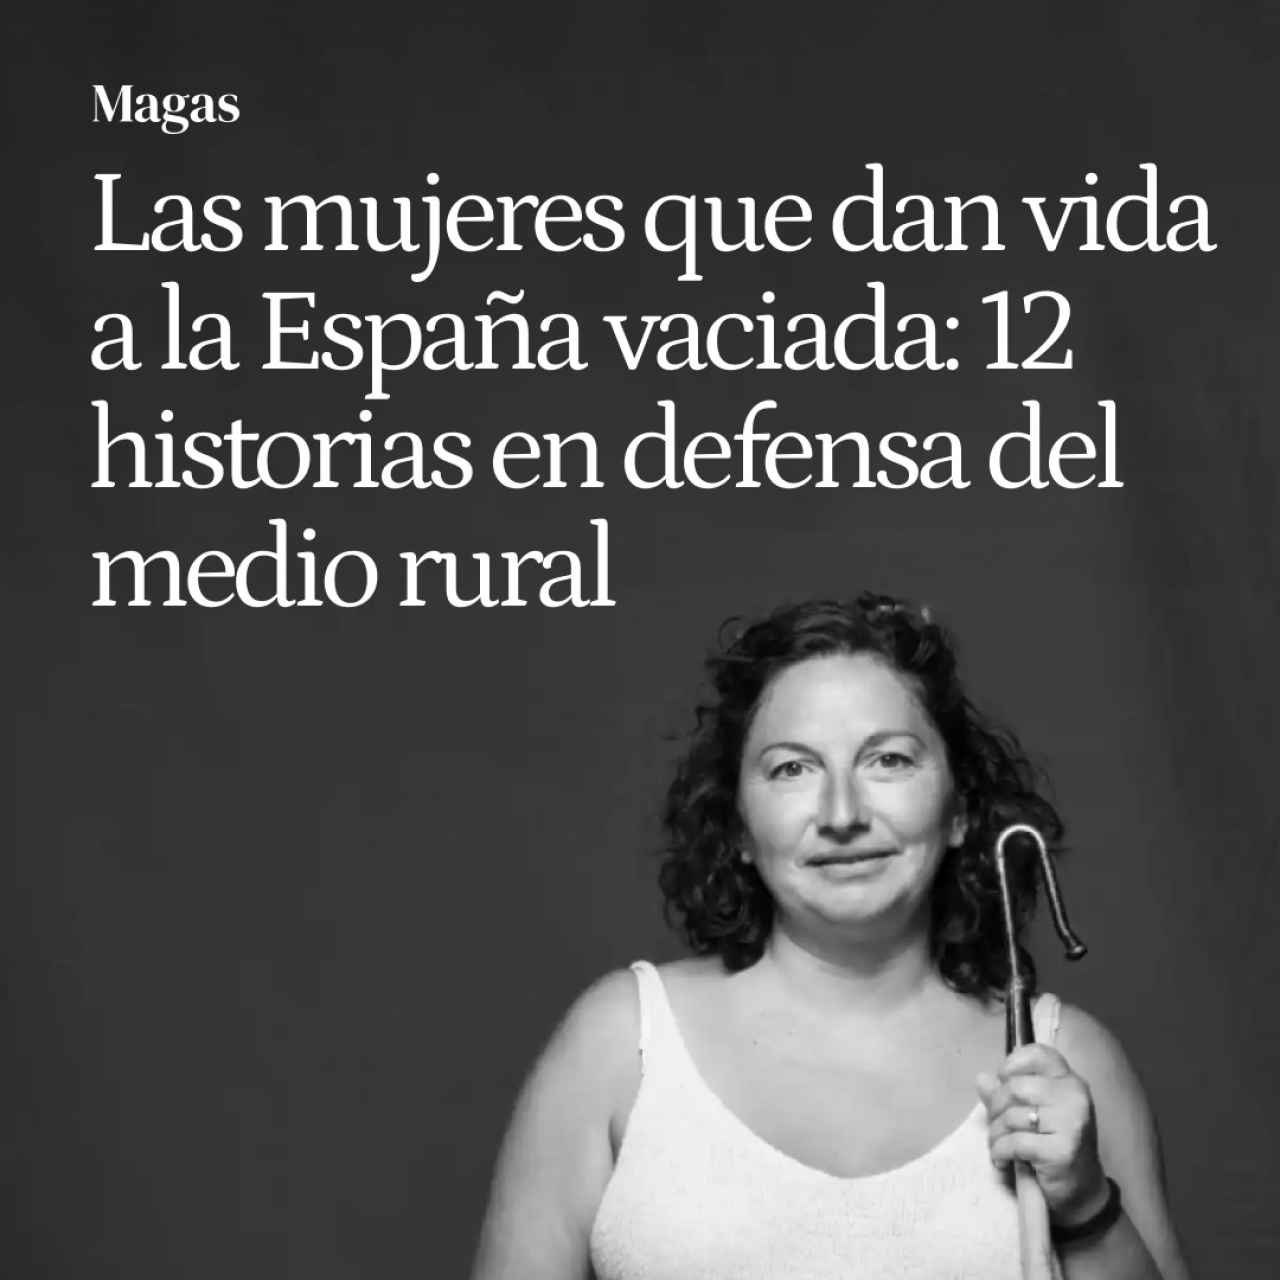 El rostro de las mujeres que dan vida a la España vaciada: 12 historias de emprendimiento y defensa del medio rural